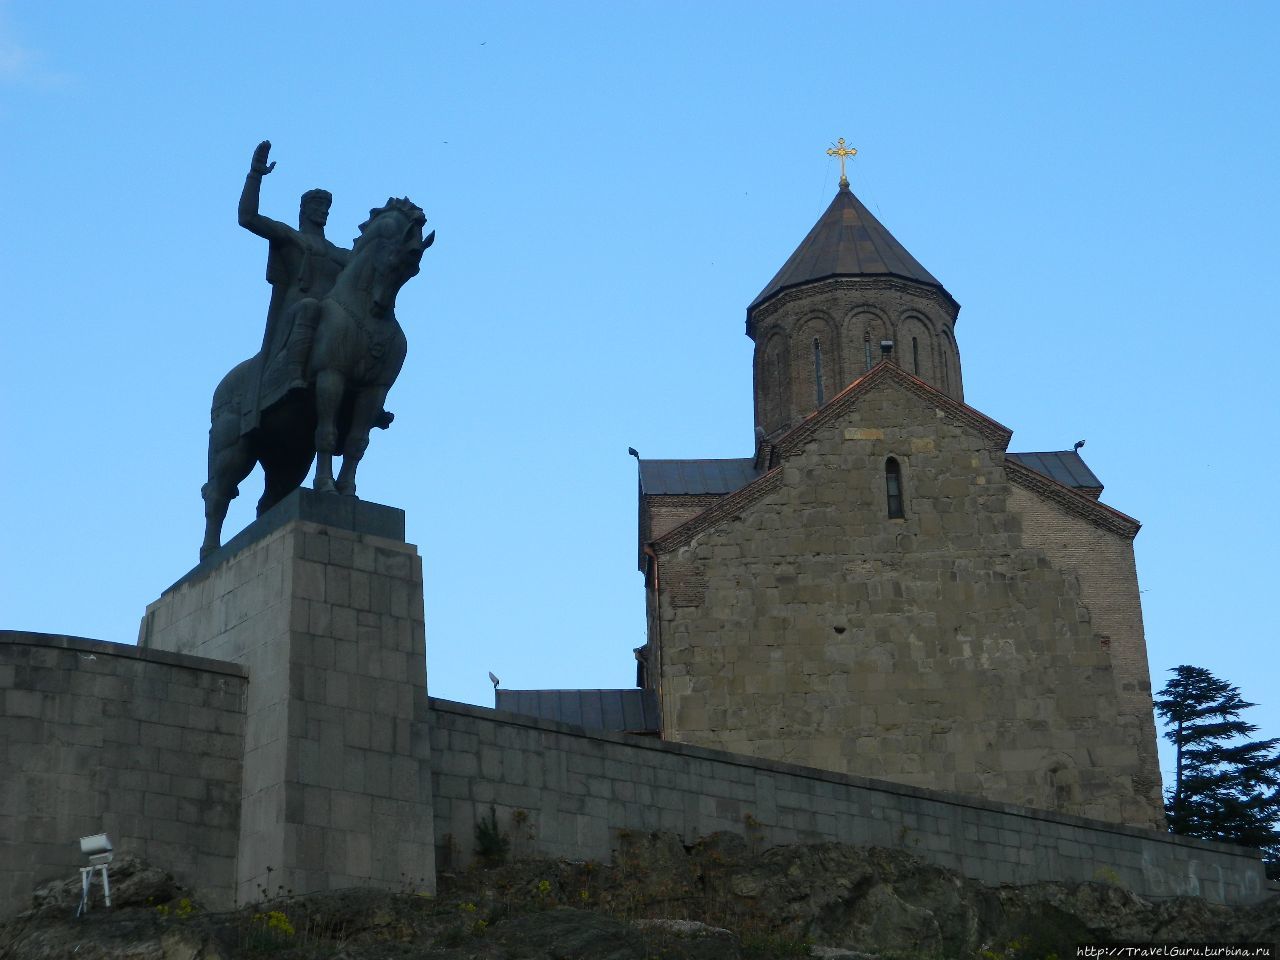 Статуя Вахтанга Горгасали, основателя Тбилиси Тбилиси, Грузия